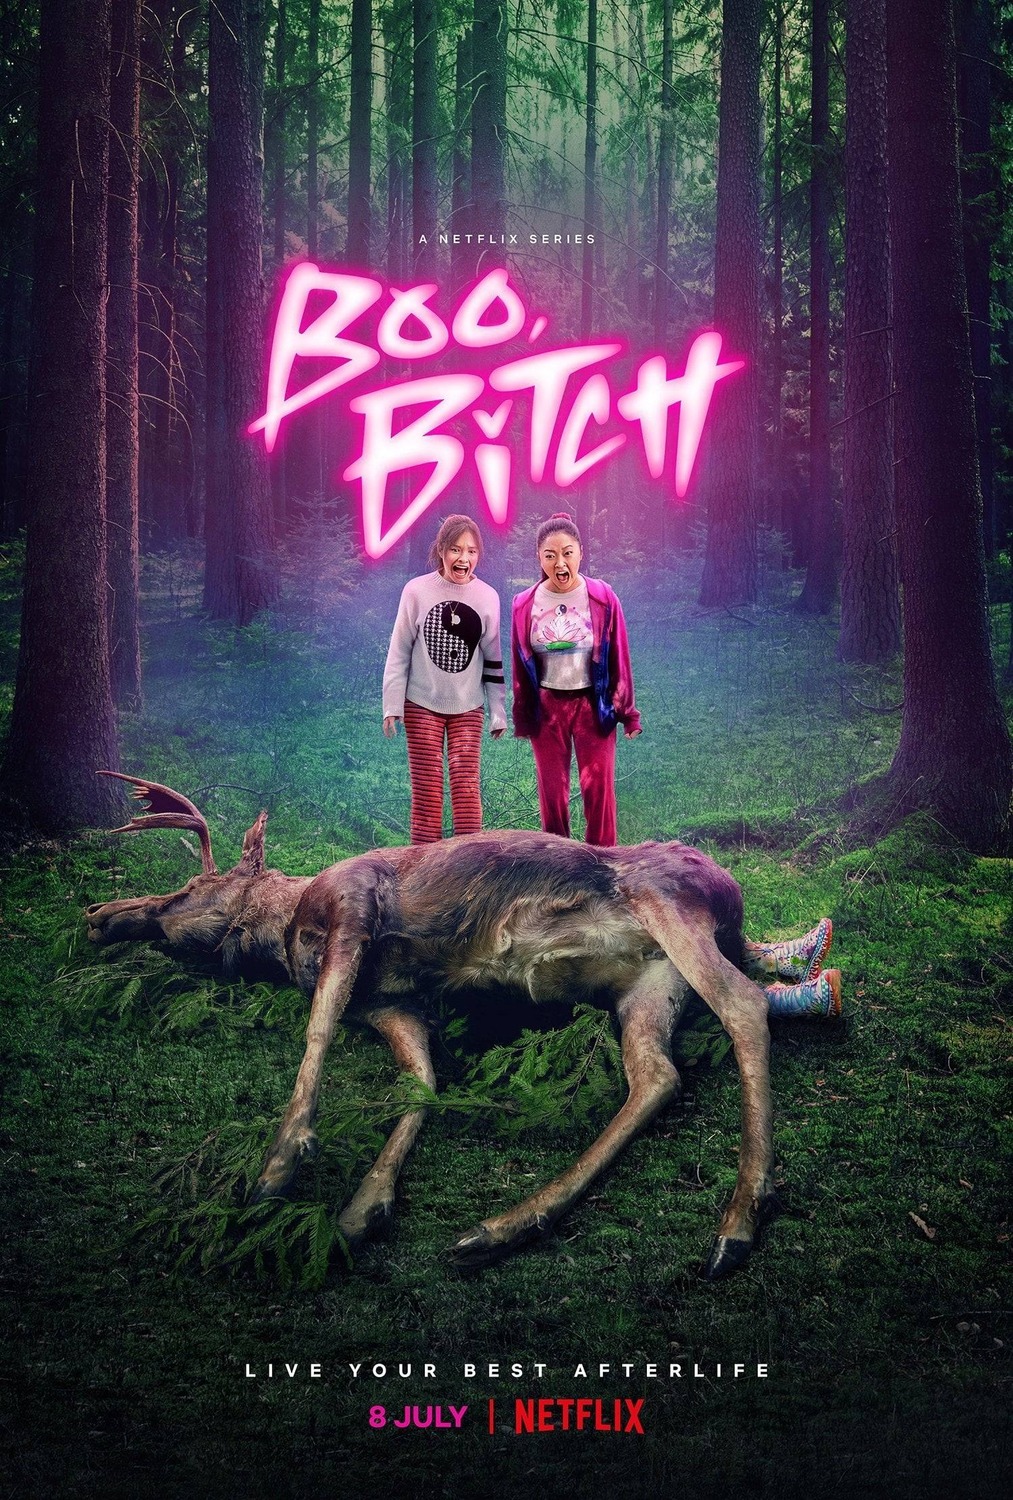 [TV] Boo Bitch (Netflix)